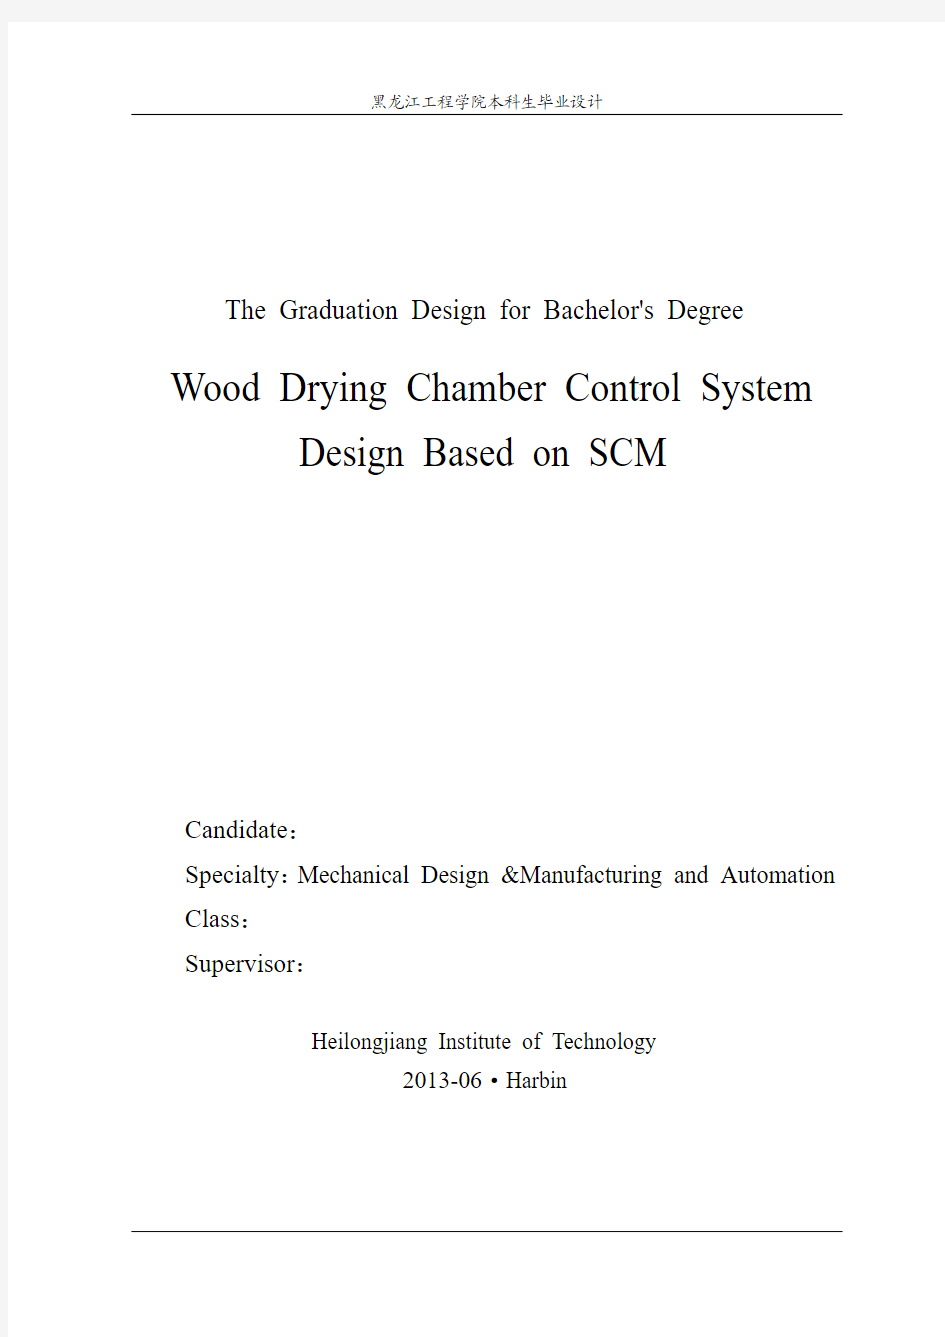 基于单片机的木材干燥室控制系统设计毕业设计